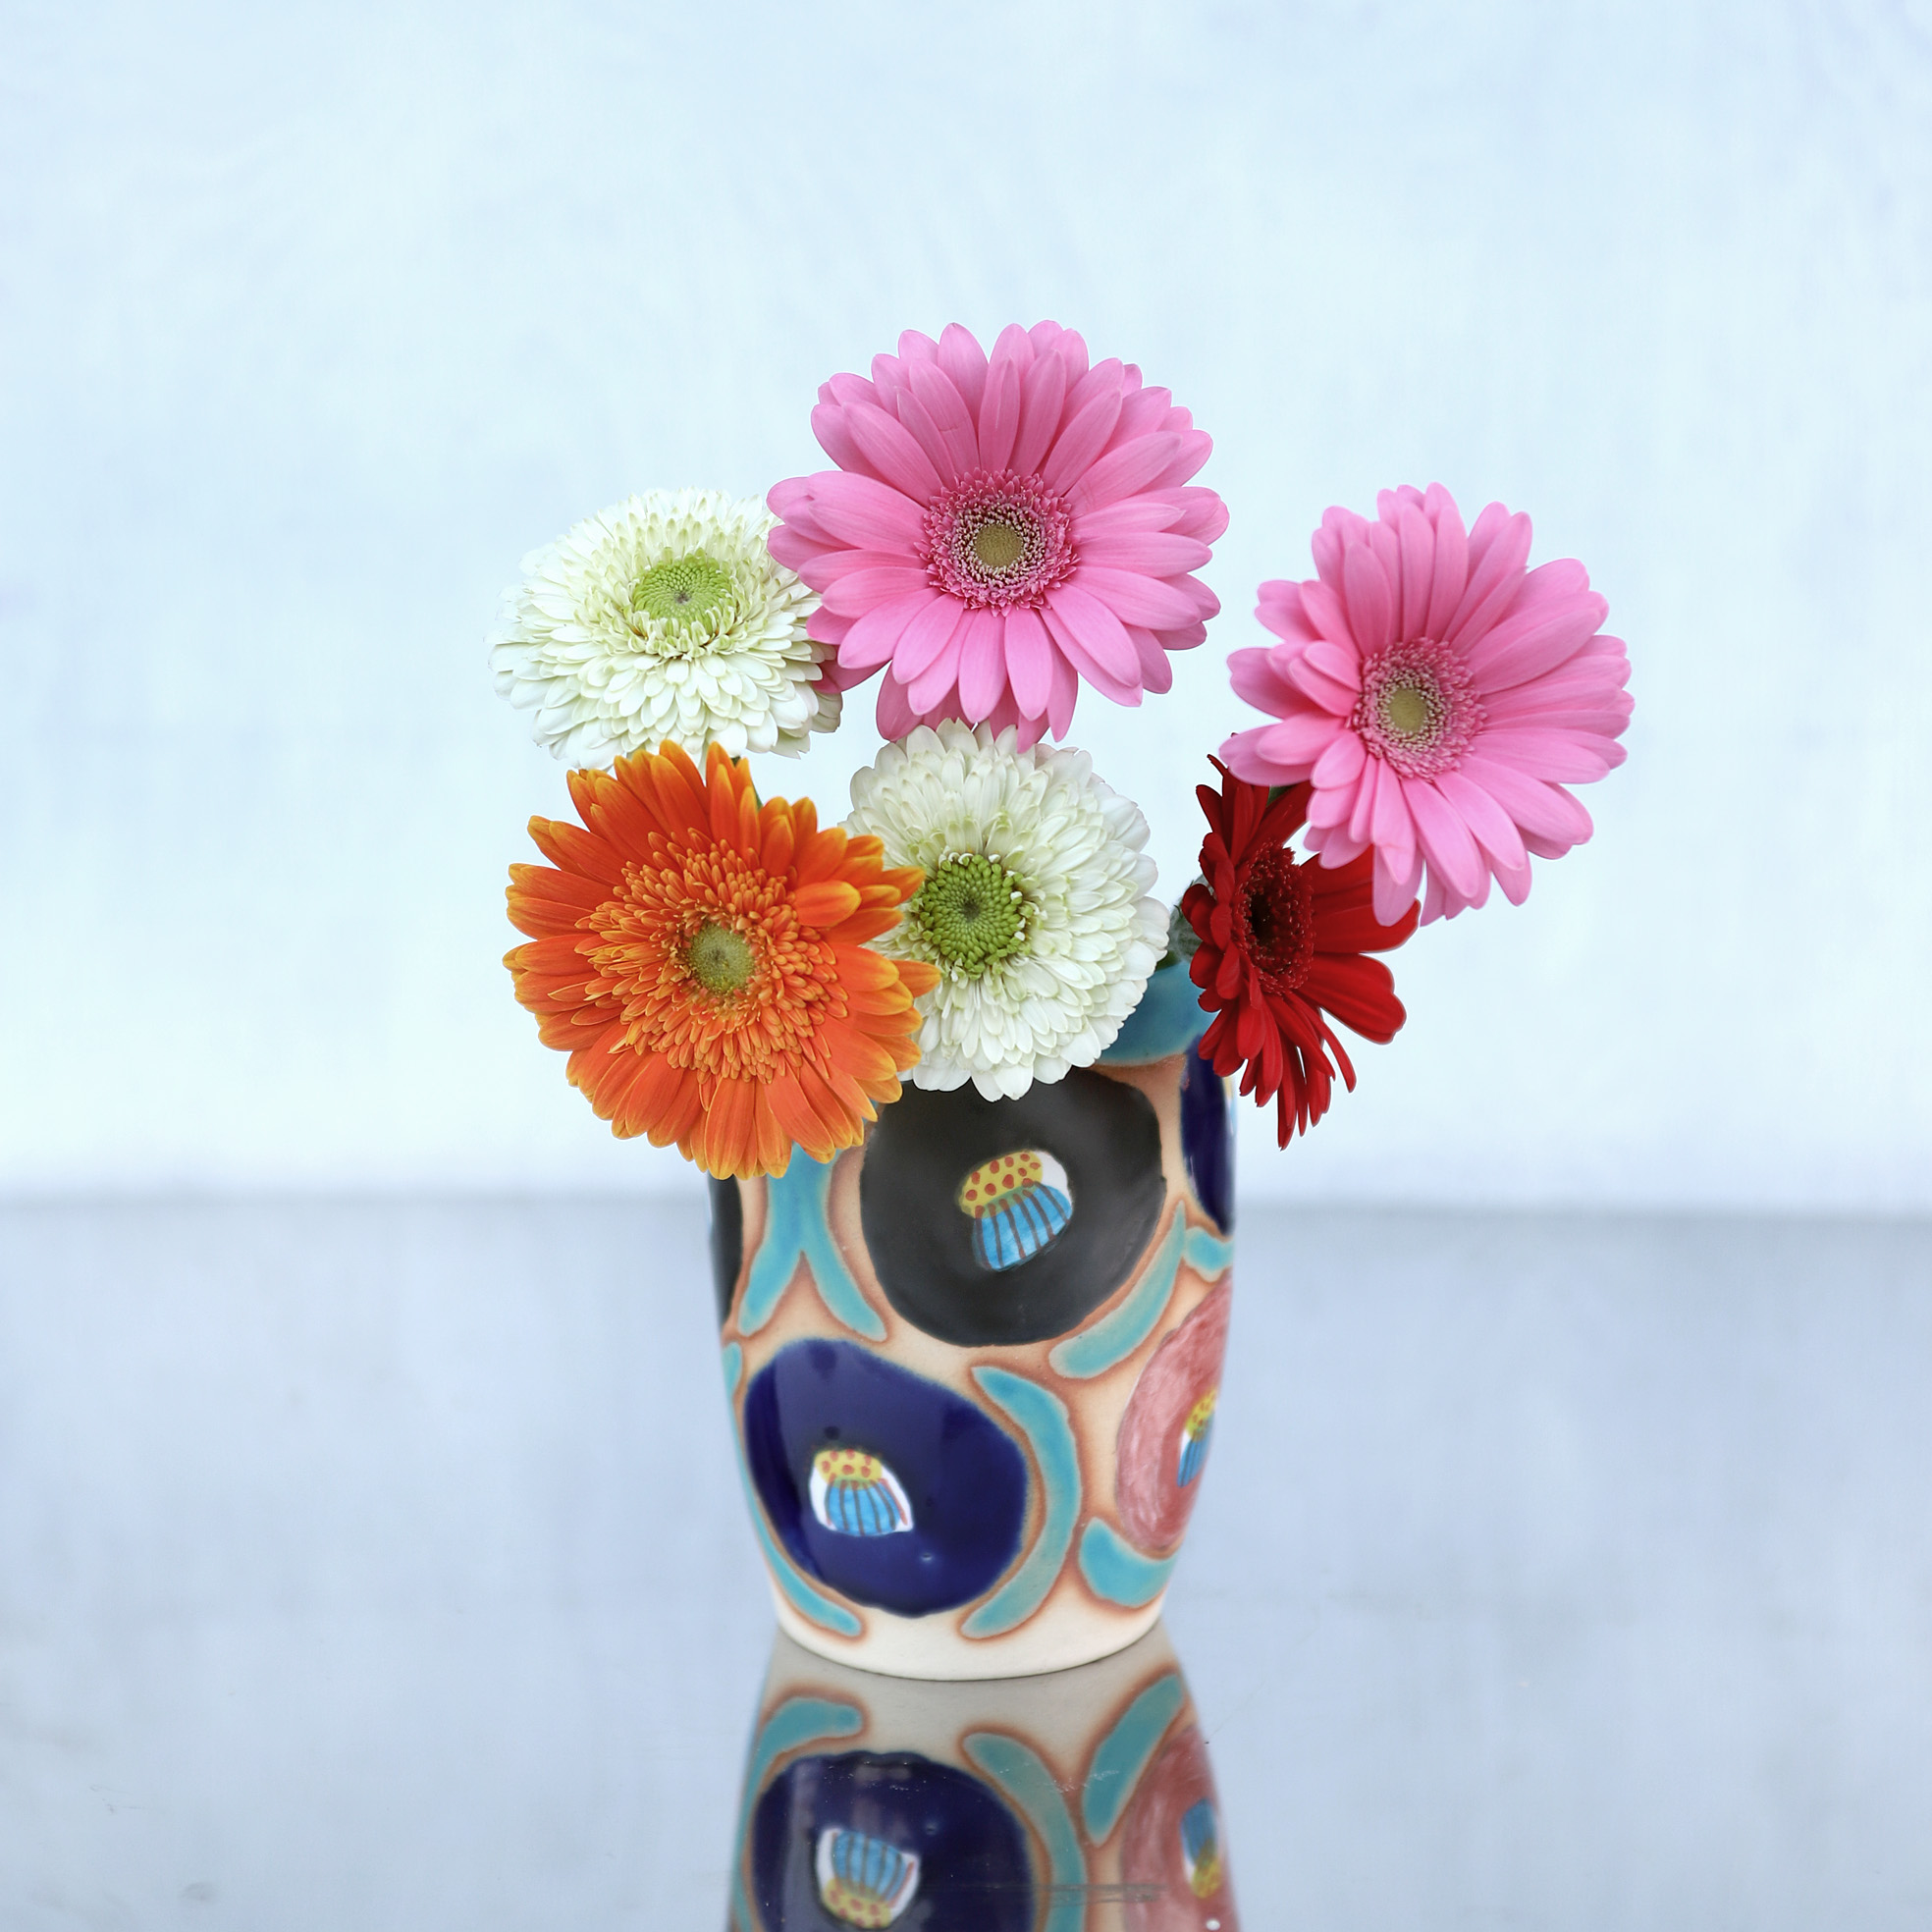 ターコイズブルー釉と椿花の花器 Iichi ハンドメイド クラフト作品 手仕事品の通販